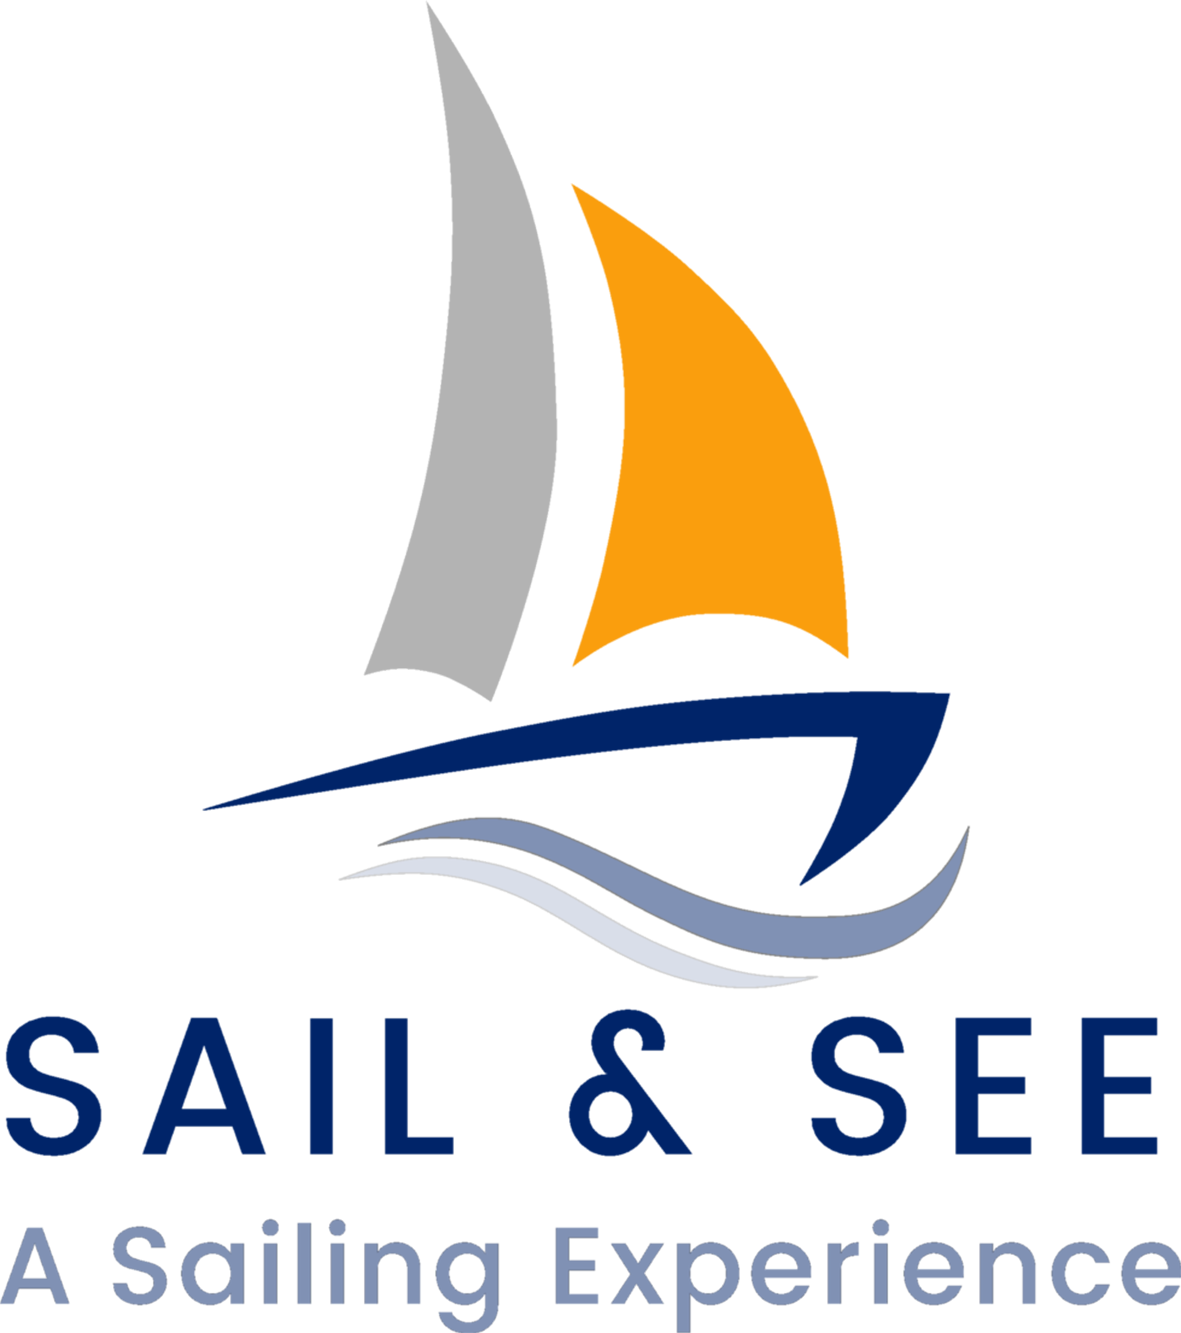 Sail and see